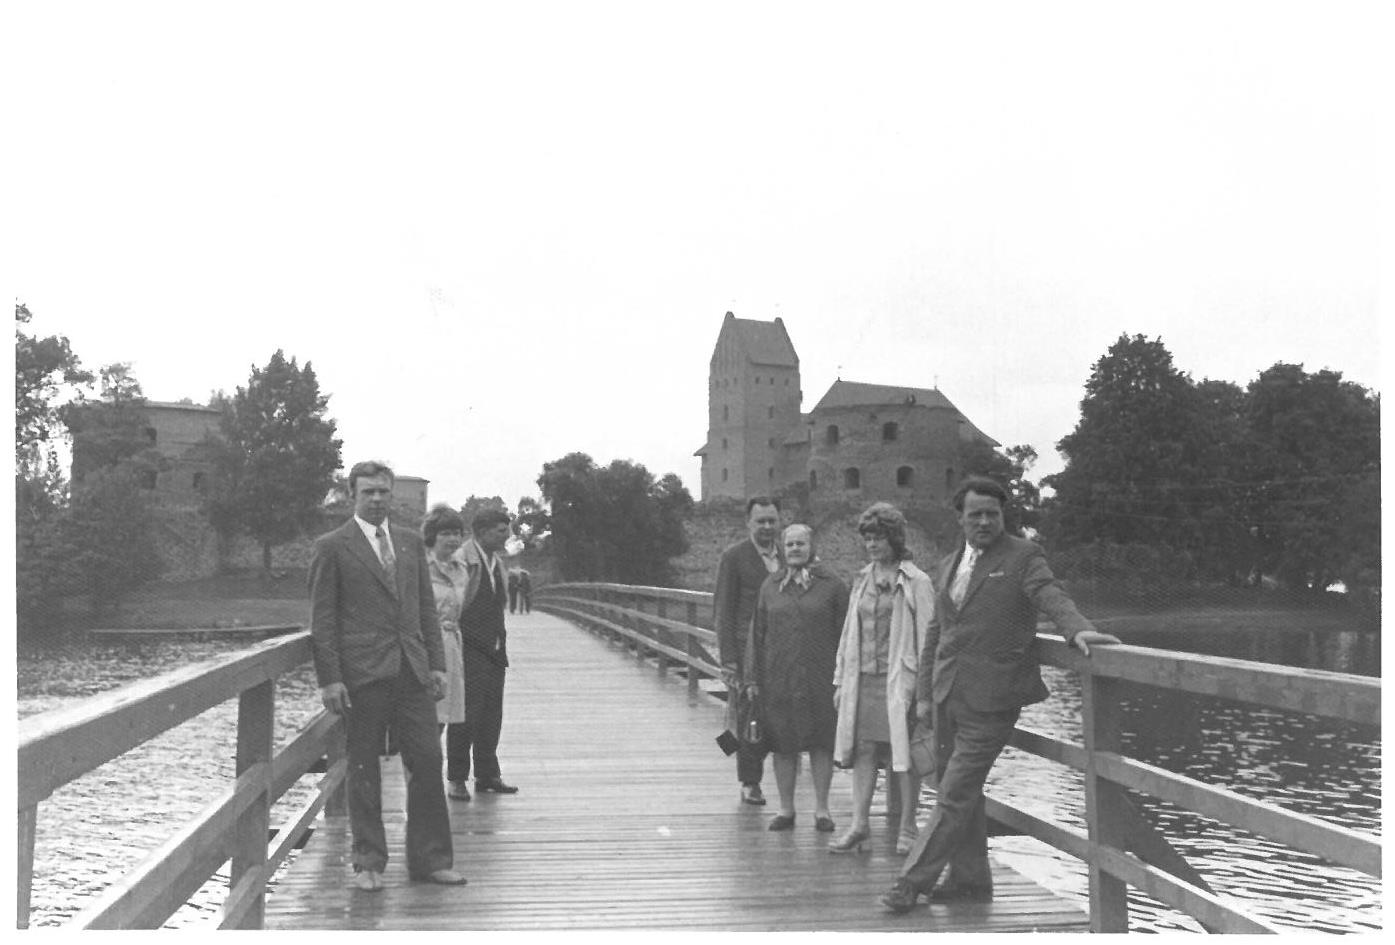 Antrasis Kazio Balčiūno vizitas Lietuvoje, praleidus ilgus tremties metus Jungtinėse Amerikos Valstijose. K. Balčiūnas nuotraukoje įamžino savo artimuosius. Trakai, 1974 m. 